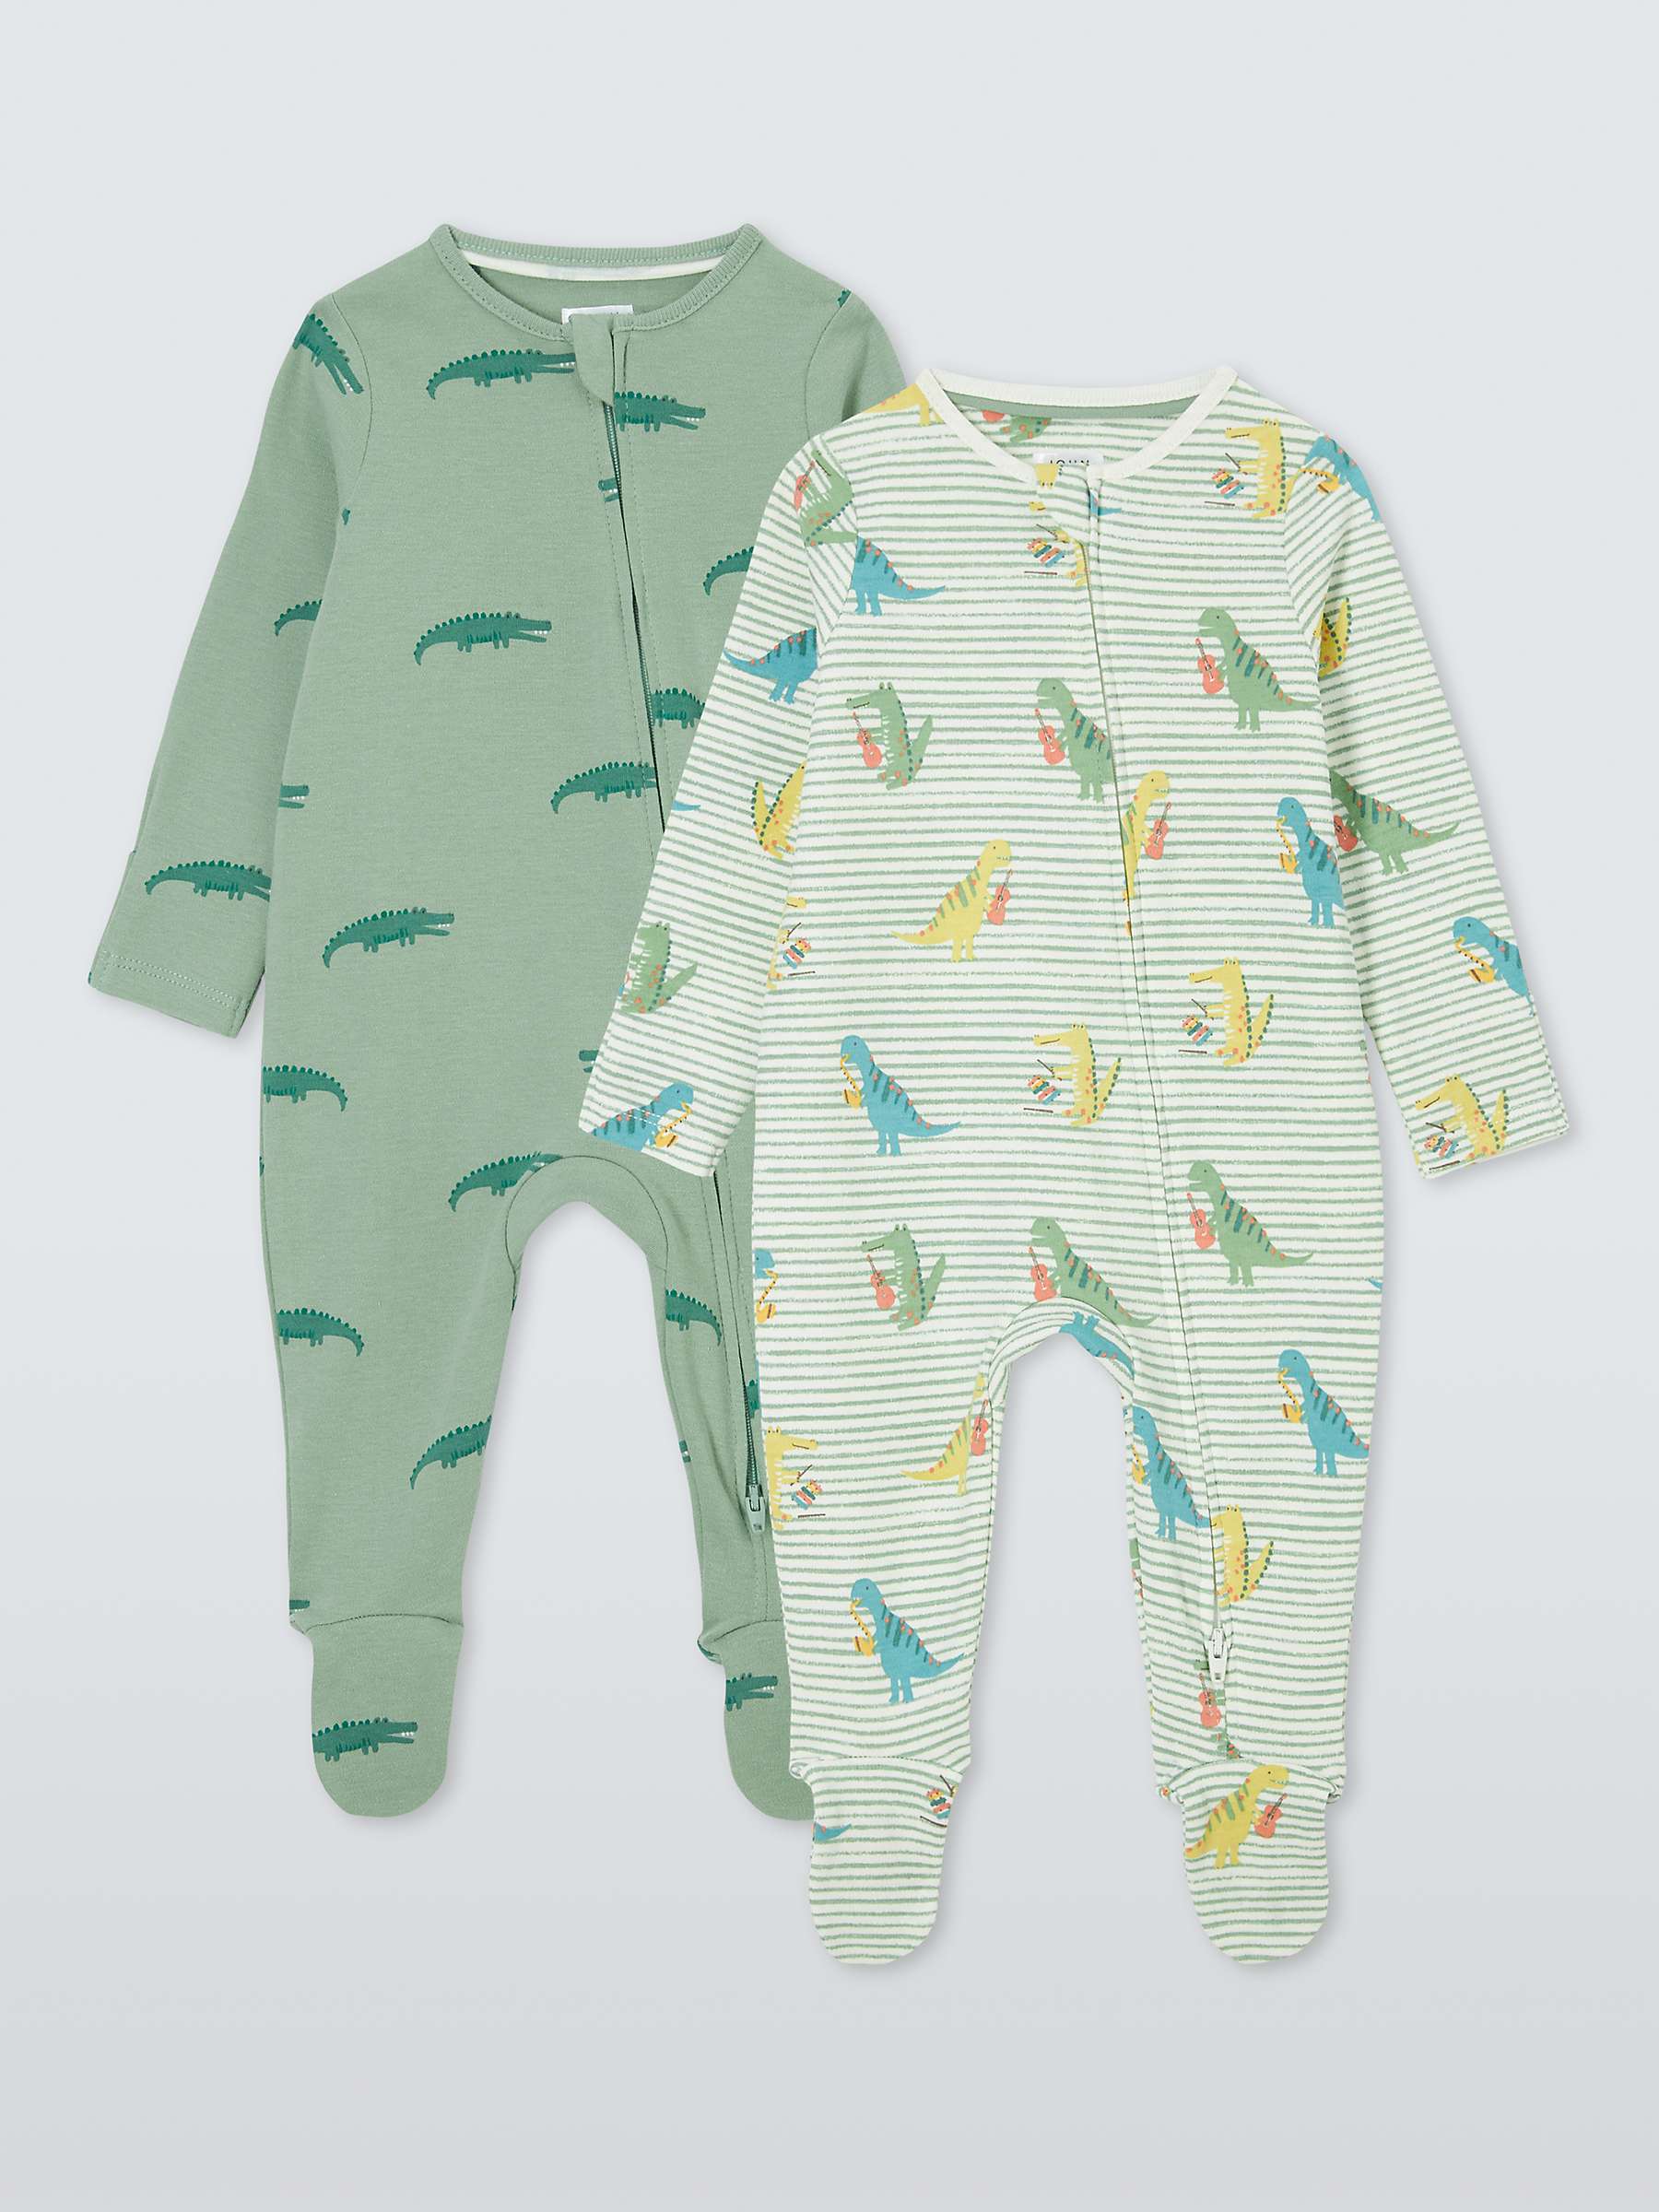 Buy John Lewis Baby Crocodile & Dinosaurs Two Way Zip Sleepsuits, Pack of 2, Green Online at johnlewis.com